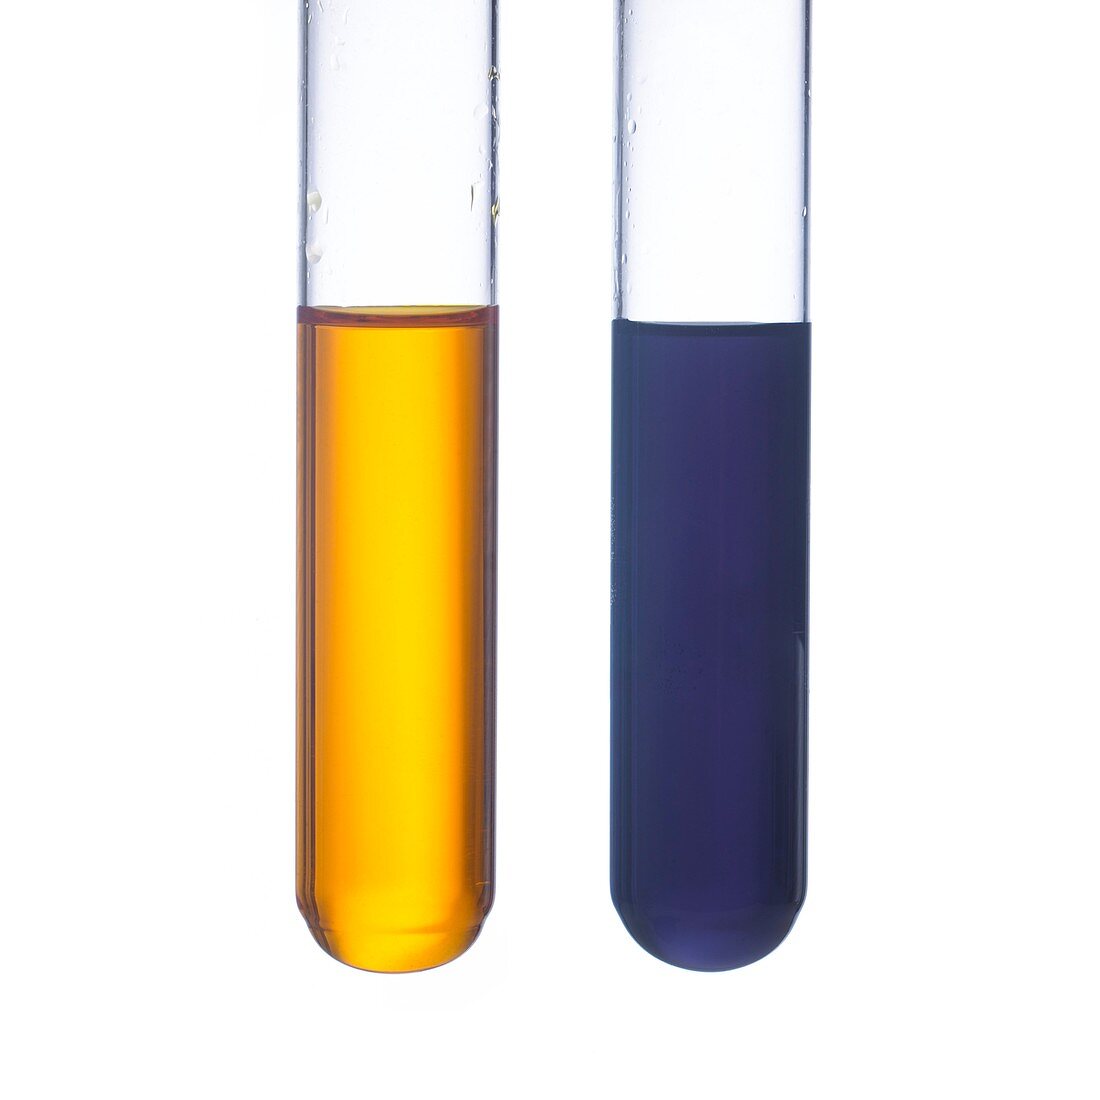 Potassium dichromate test for alcohols